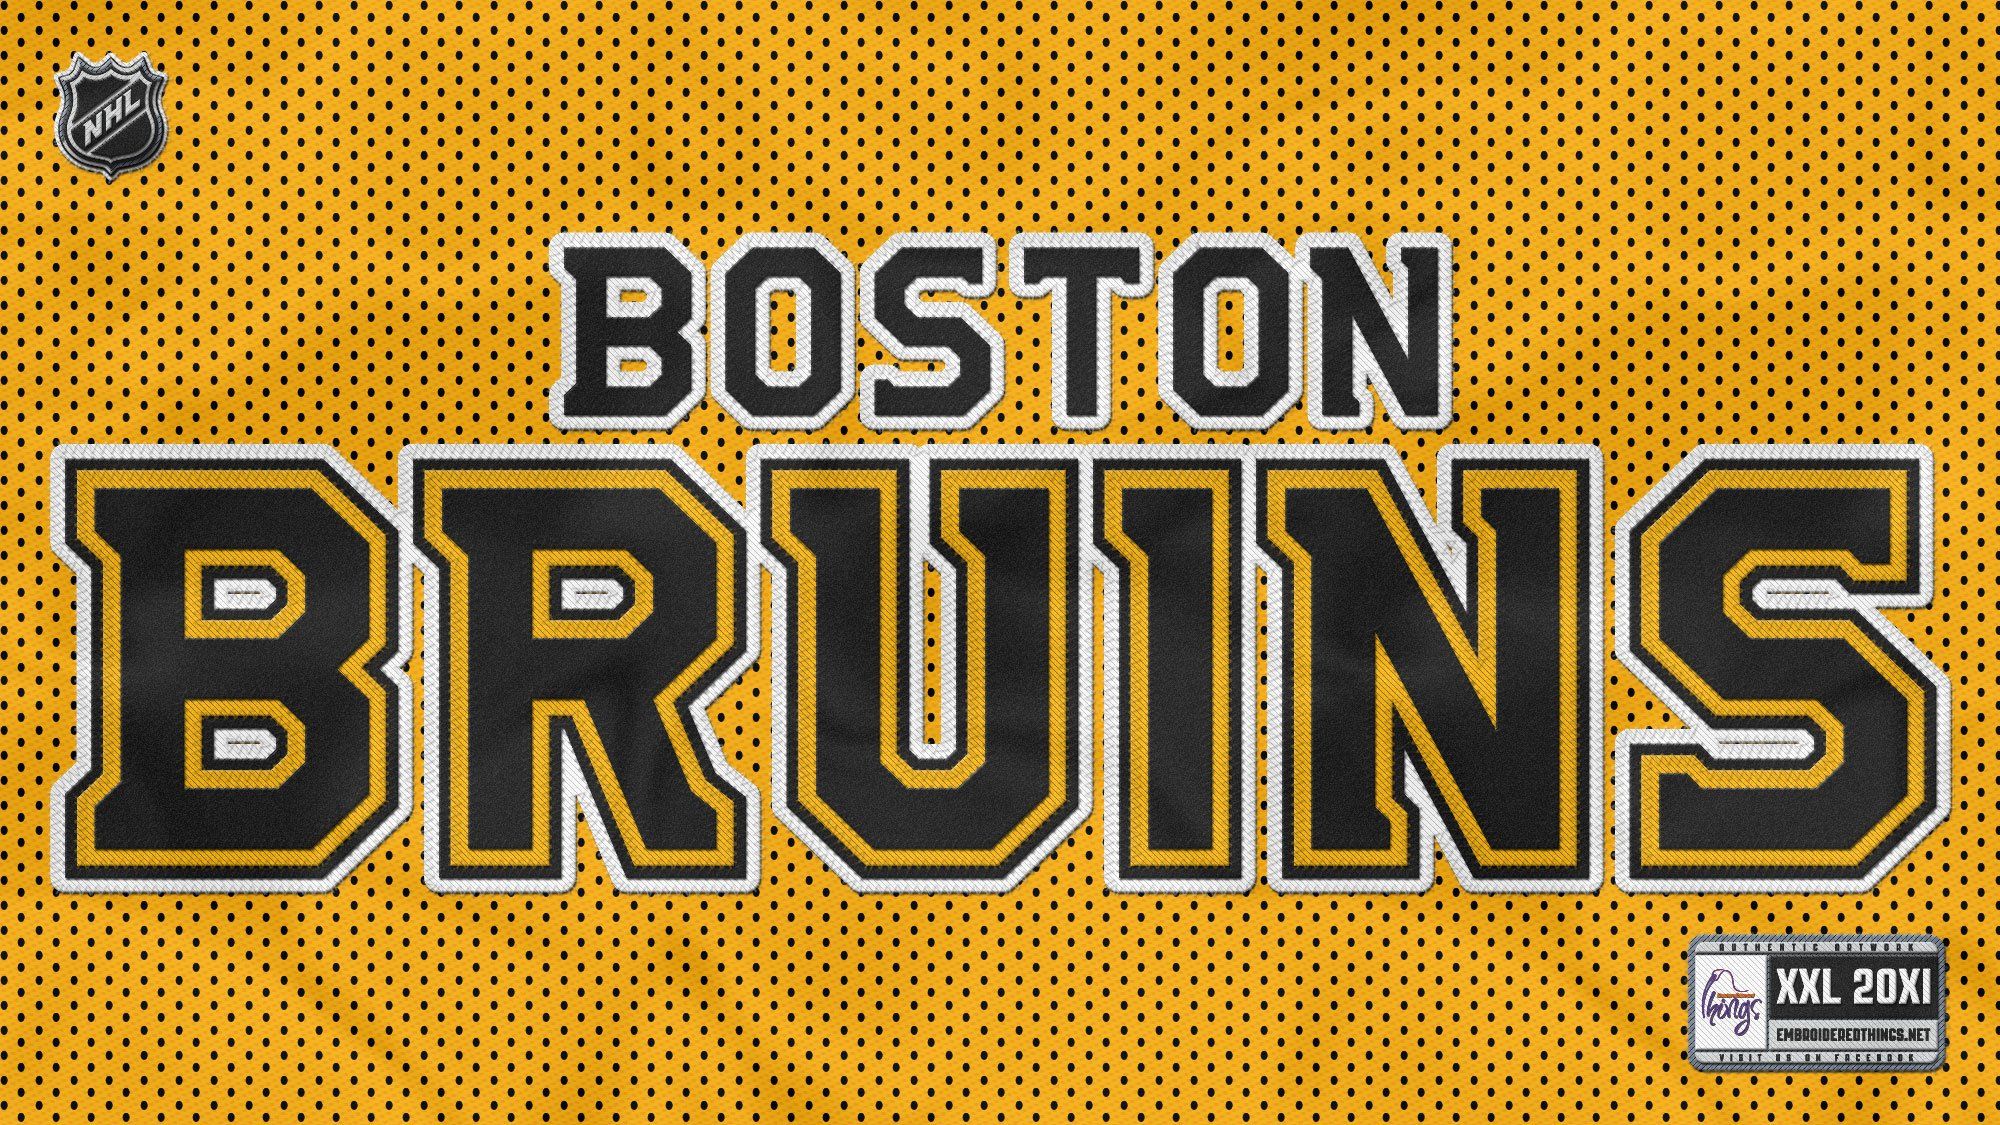 Hockey Tim Thomas Boston Bruins wallpaper 1680x1050 128796